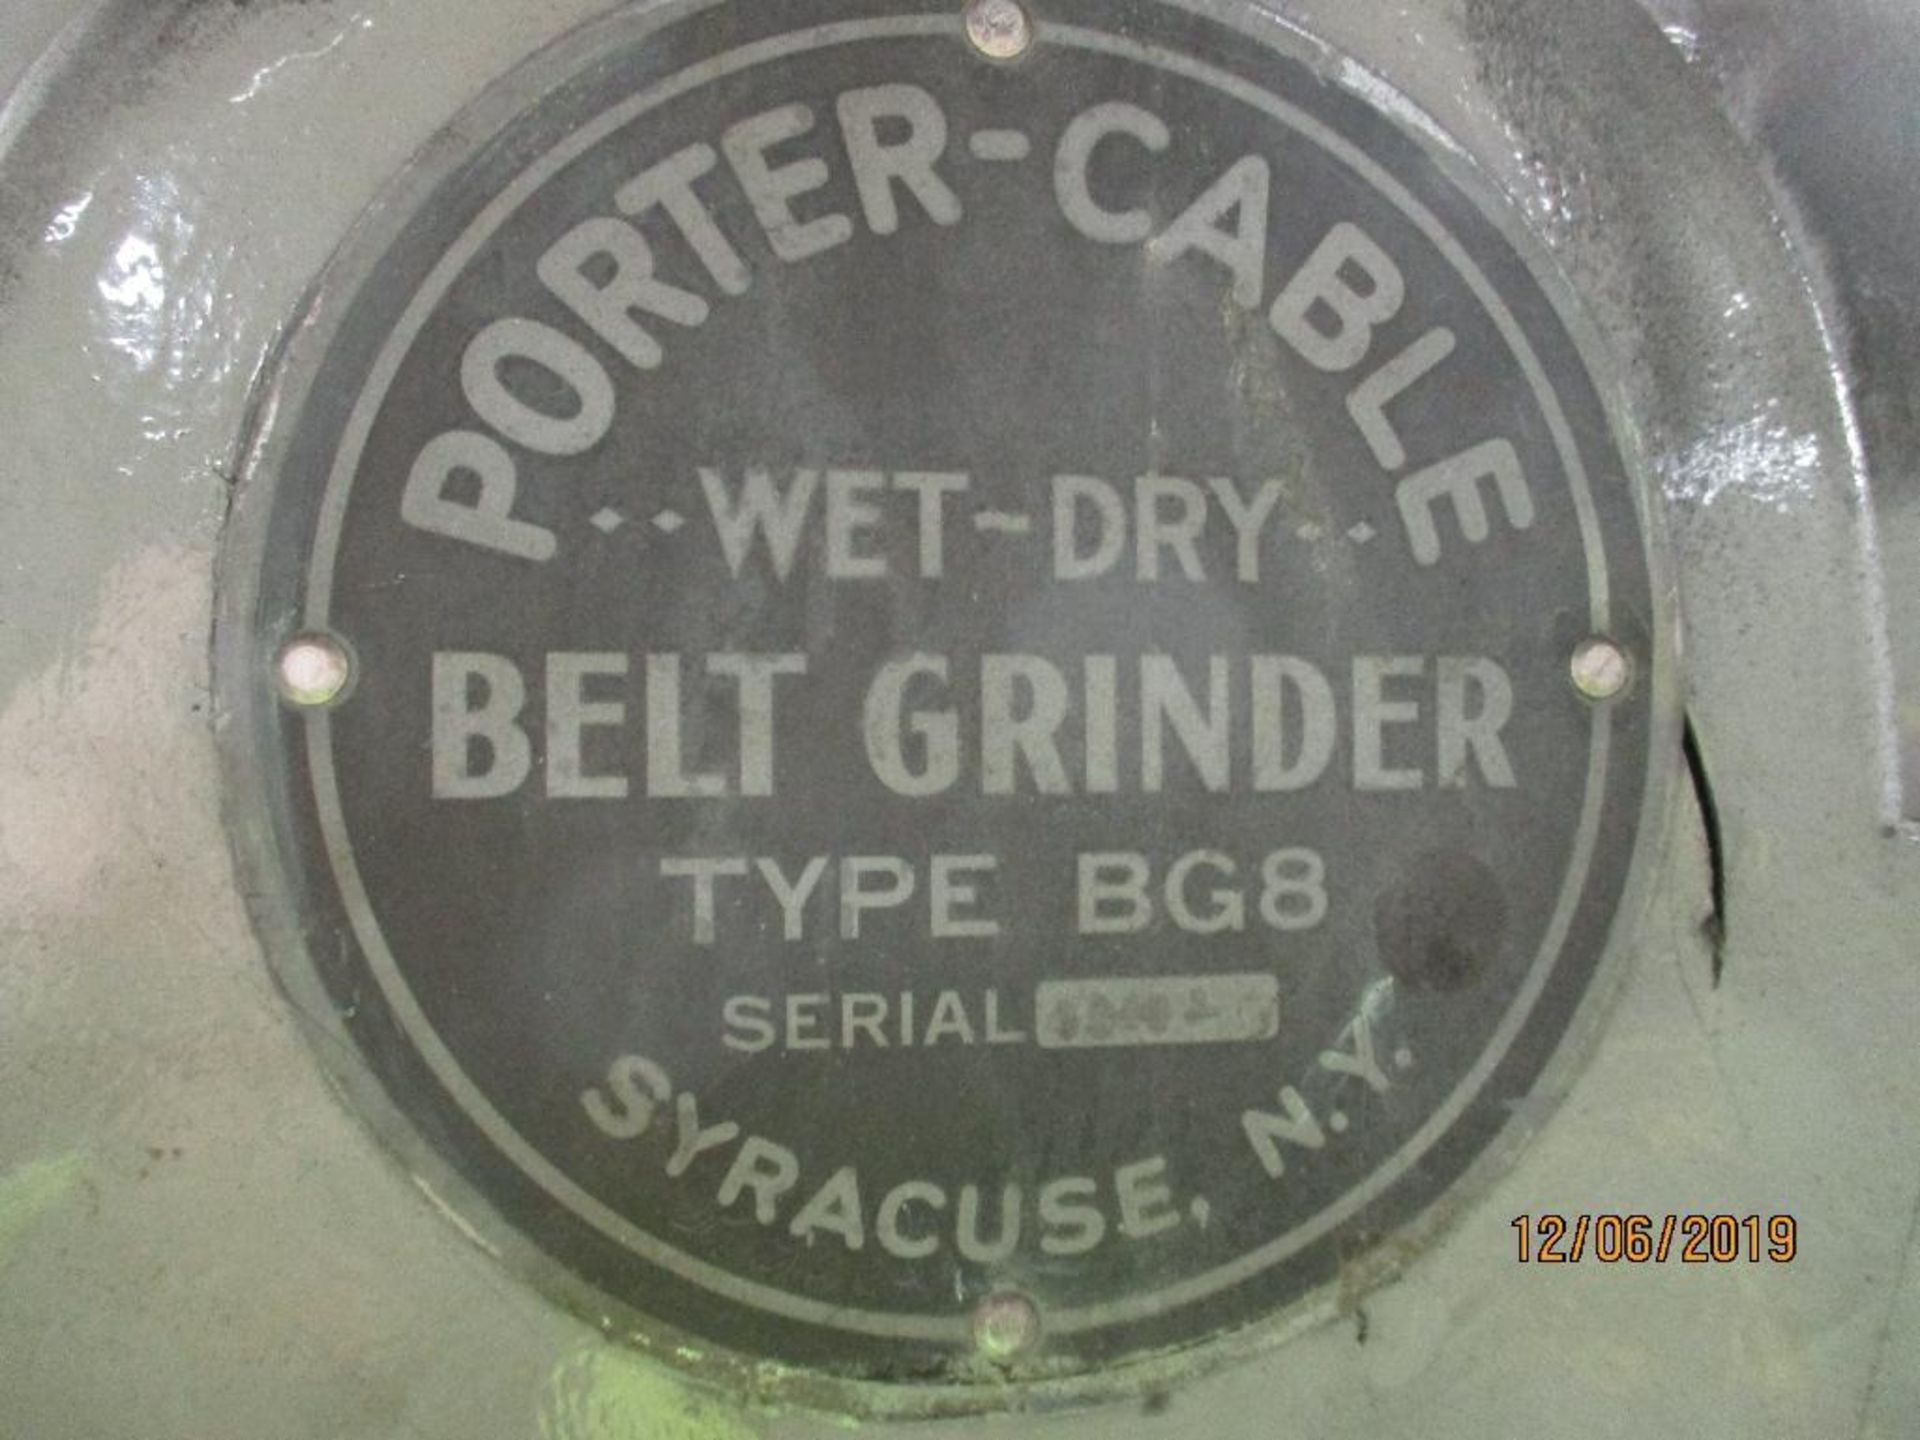 Porter Cable Wet/Dry Belt Sander, 5hp Type BG8 S/N 7544-0 - Image 4 of 4